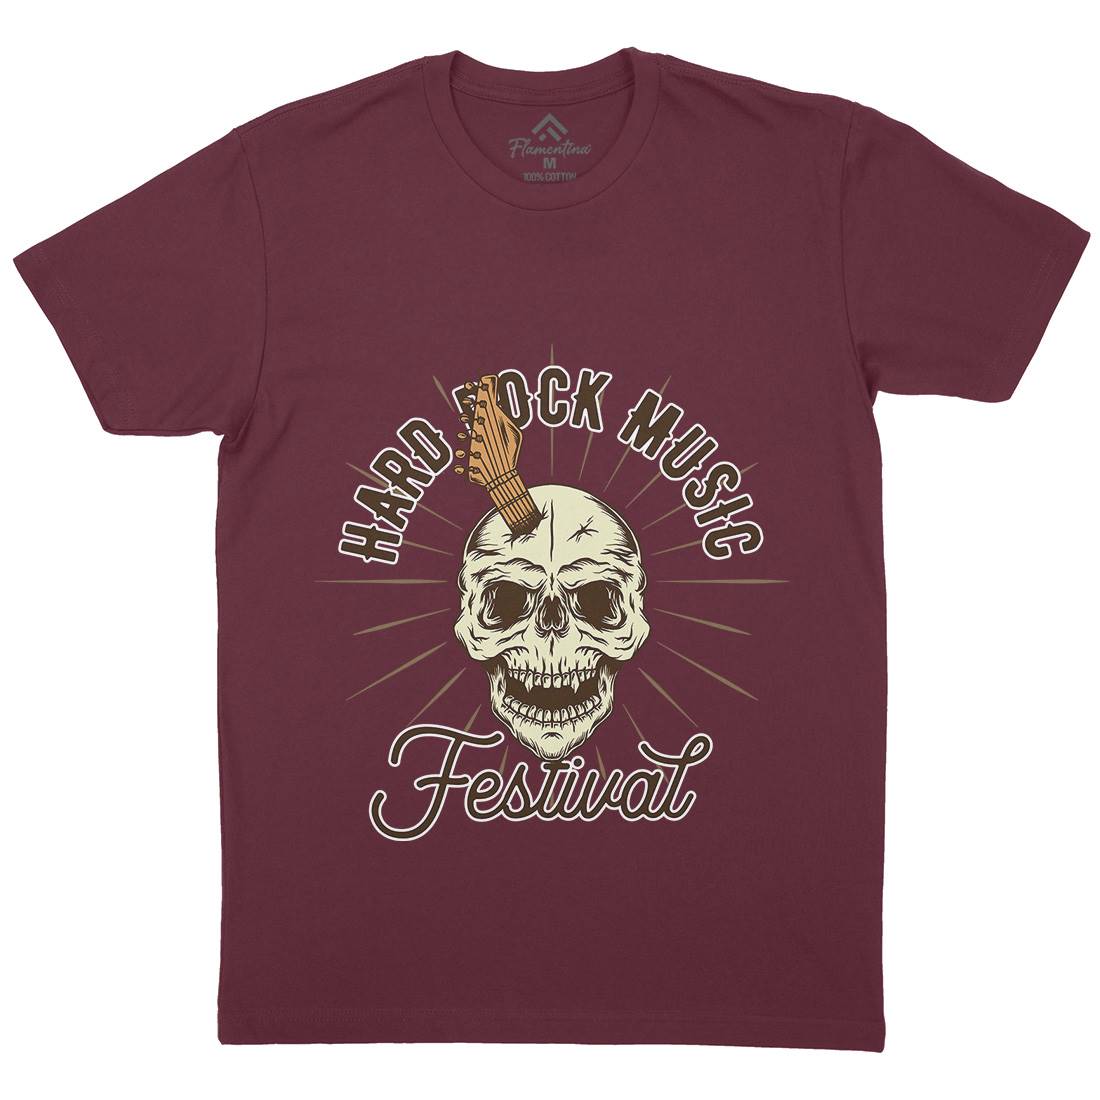 Hard Rock Mens Crew Neck T-Shirt Music D942